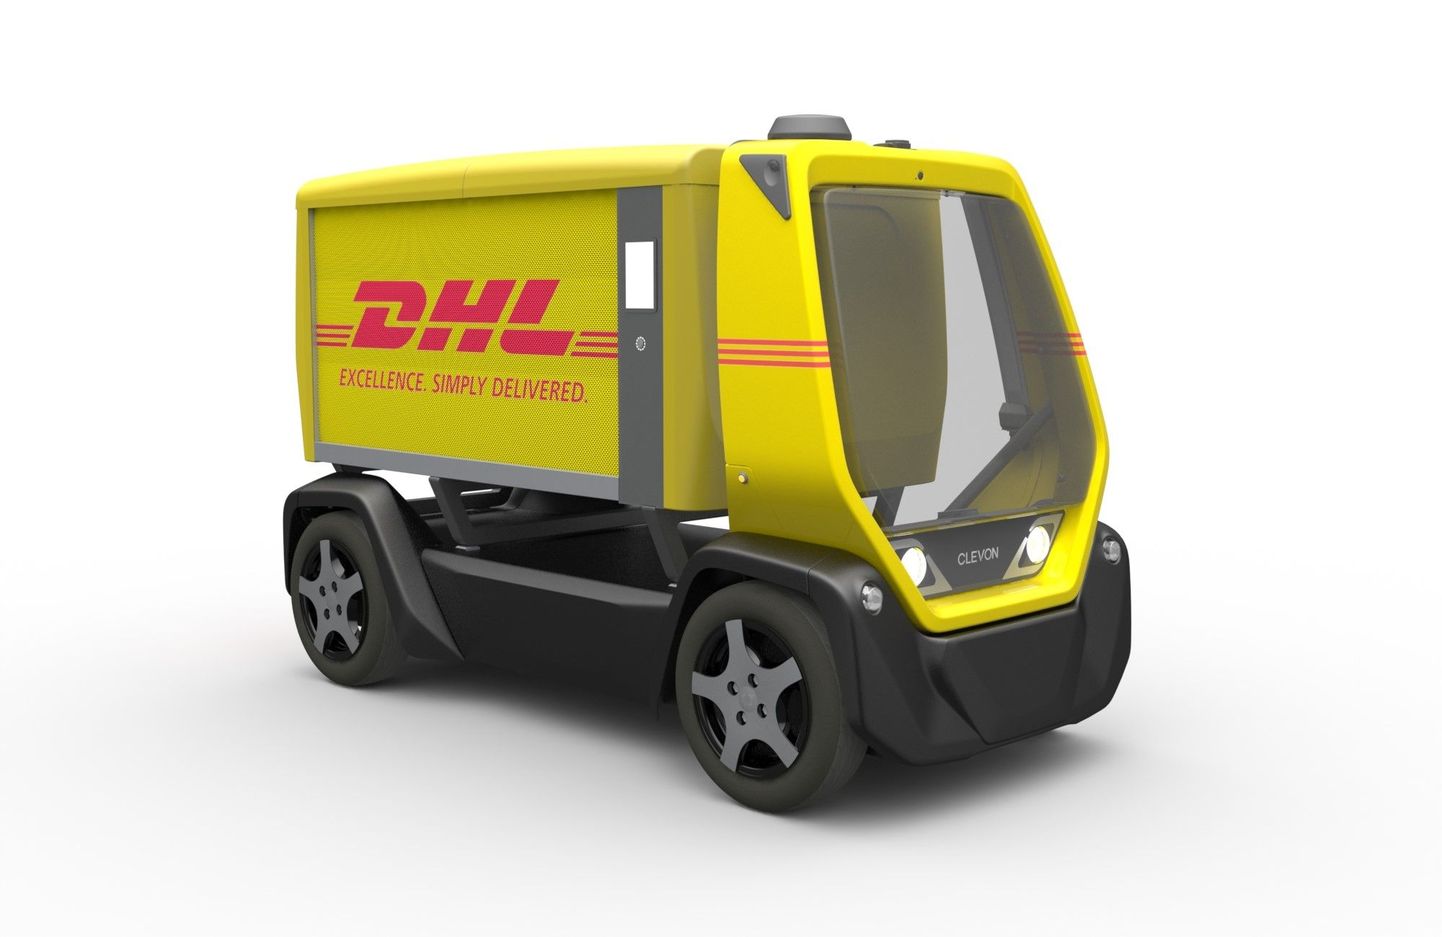 Selline näeb välja juulis Tallinna tänavail DHL-i värvides ringi liikuma hakkav mehitamata robotkuller Clevon 1.